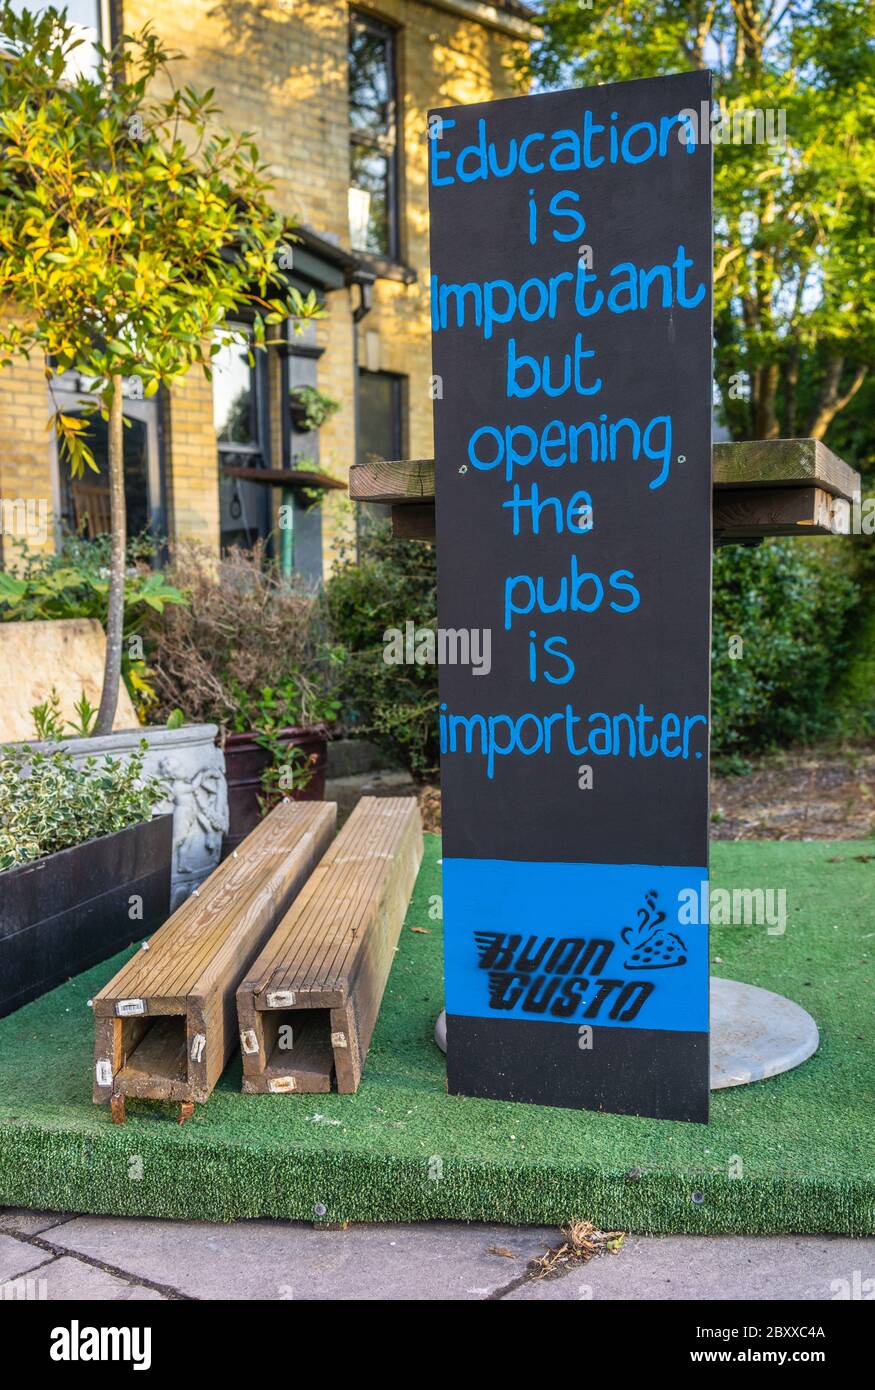 Un panneau humoristique demandant l'ouverture / réouverture des pubs qui ont été fermés depuis l'épidémie de Covid 19 au Royaume-Uni, Southampton, Angleterre, Royaume-Uni Banque D'Images